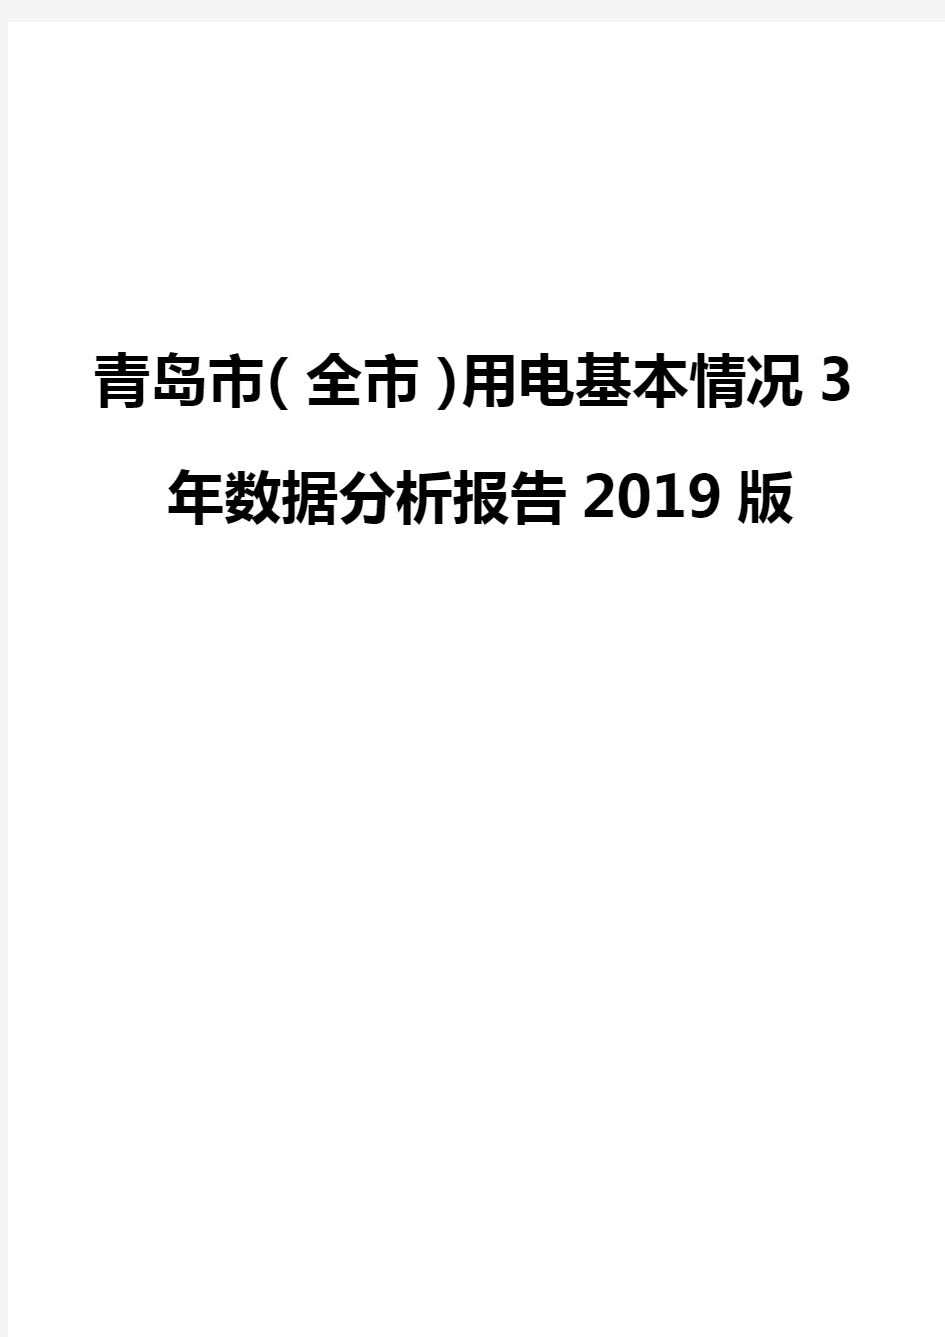 青岛市(全市)用电基本情况3年数据分析报告2019版